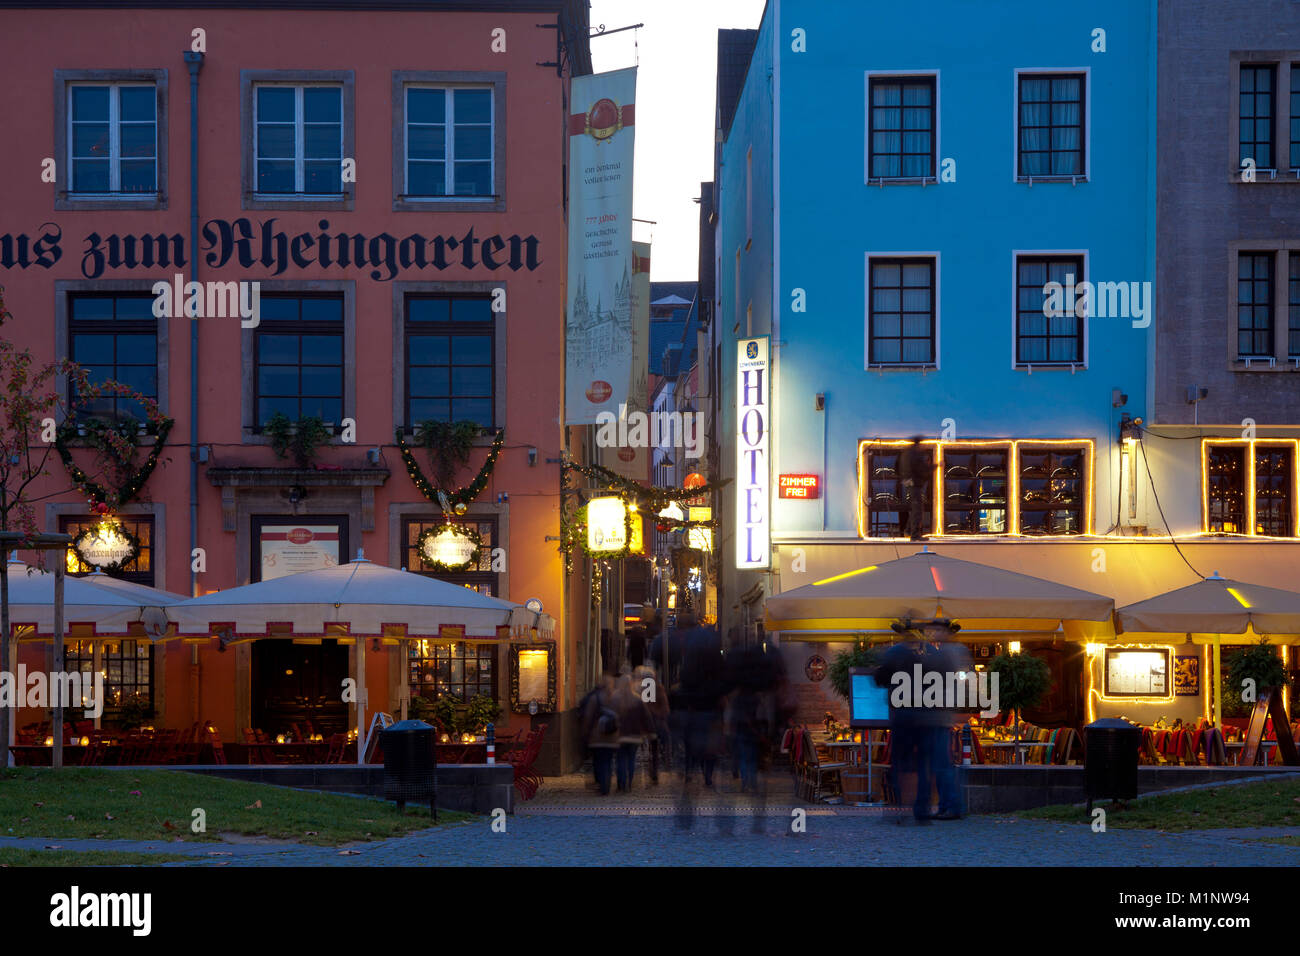 Germania, Colonia, case nella parte storica della città alla Frankenwerft, sulla sinistra il ristorante Haxnhaus zum Rheingarten, vista la corsia Foto Stock